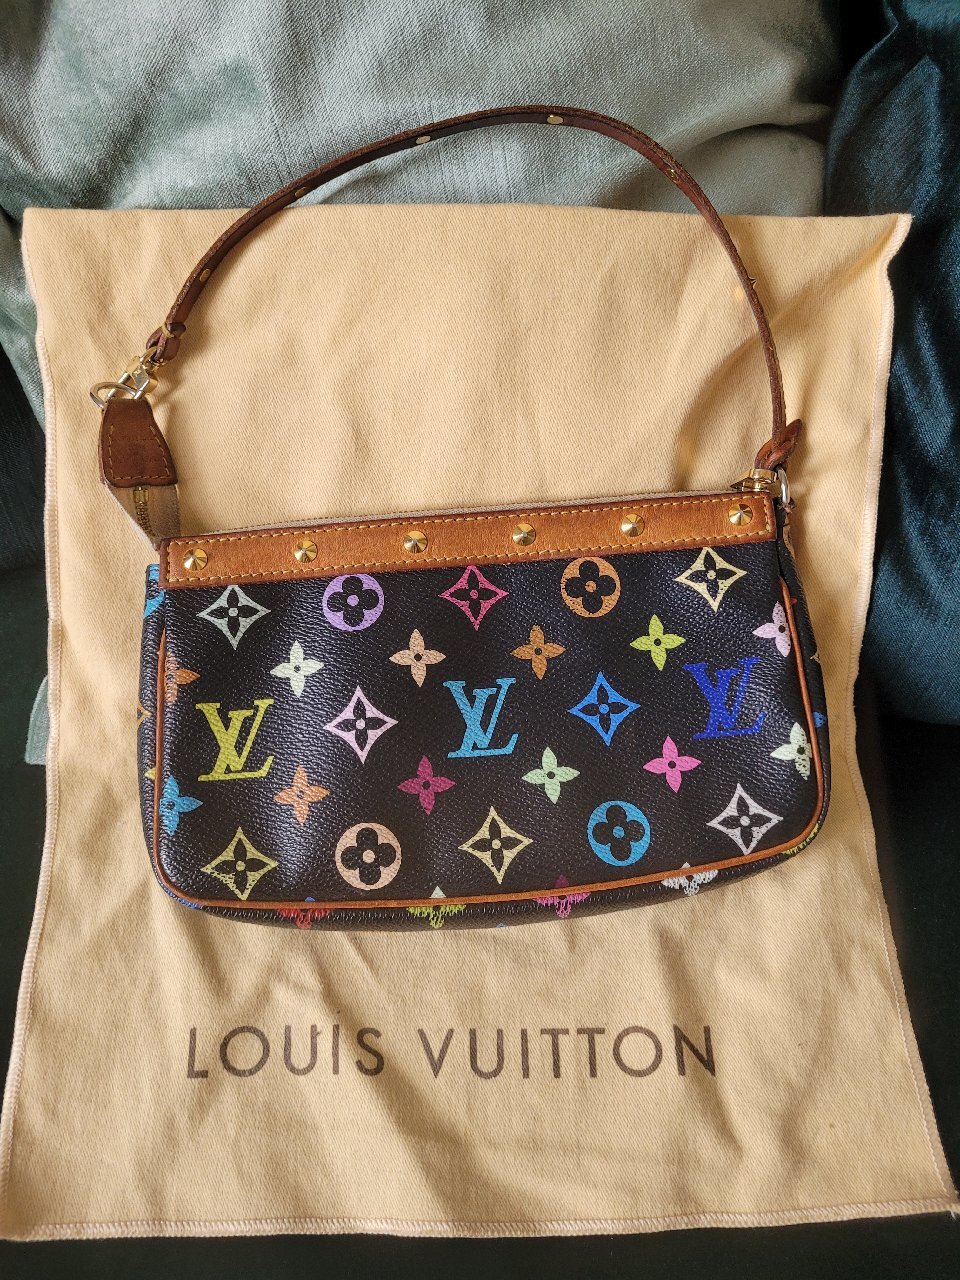 højdepunkt tyve Vanding 14 håndplukkede vintage Louis Vuitton tasker fra Trendsales — Trendsales